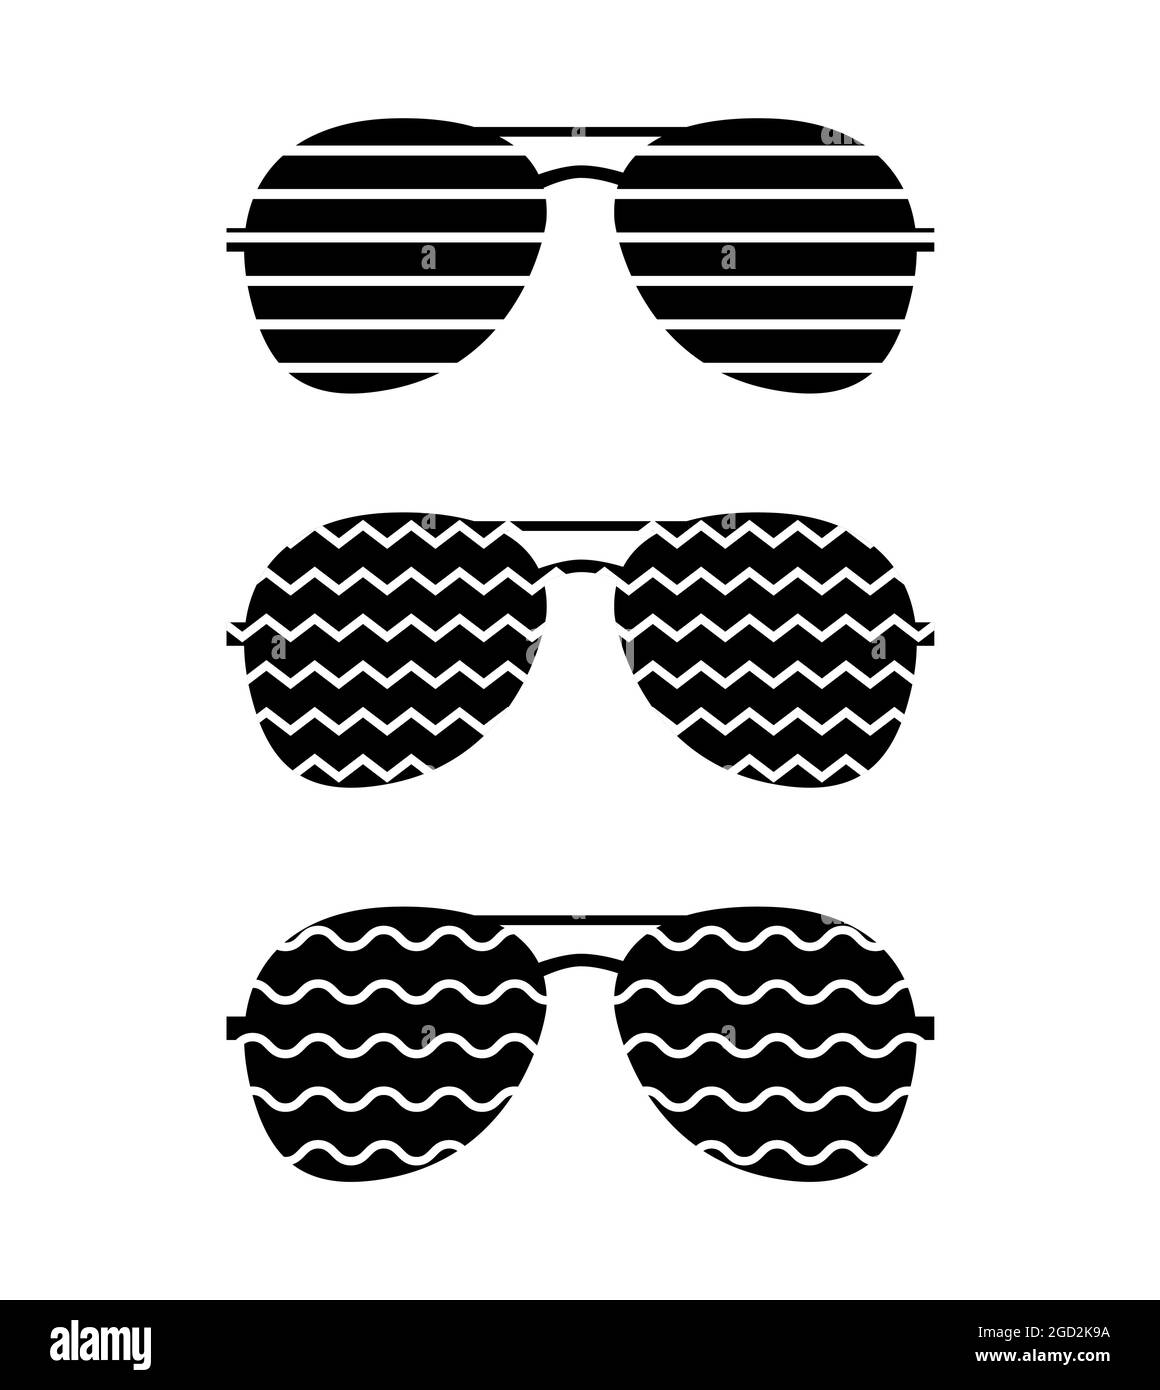 Modern sunglasses logo Stock Vector by ©art-sonik 116377896